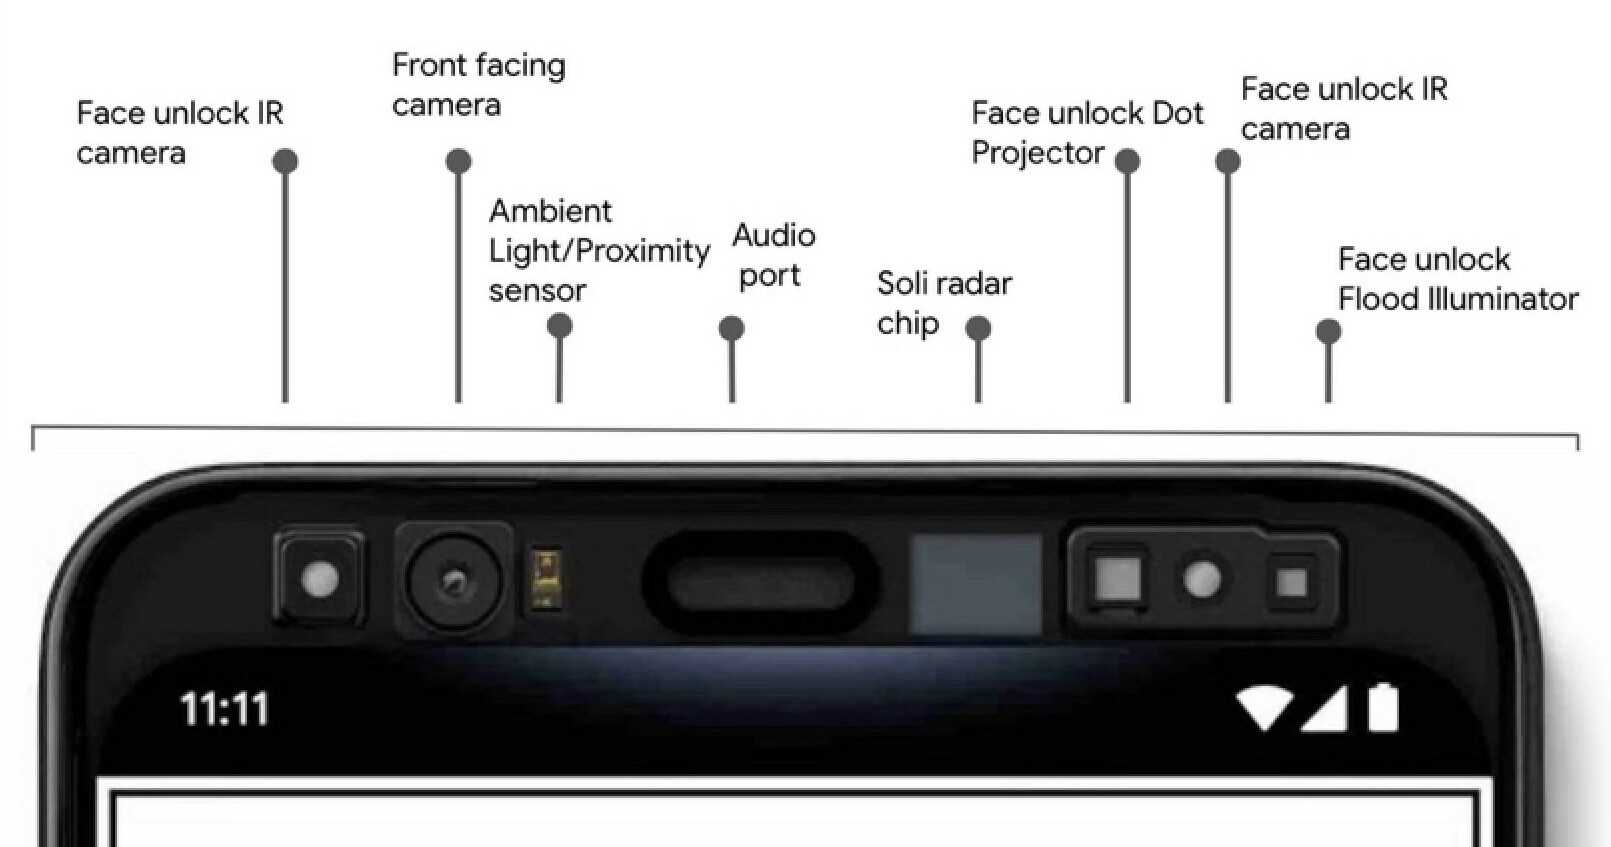 Die Hardware, die in der Pixel 4-Serie verwendet wird, um eine 3D-Karte des Gesichts des Benutzers zu erstellen – der Sony-Sensor, der in Pixel 6 Pro verwendet wird, ermöglicht möglicherweise das Hinzufügen von Face Unlock zum Telefon